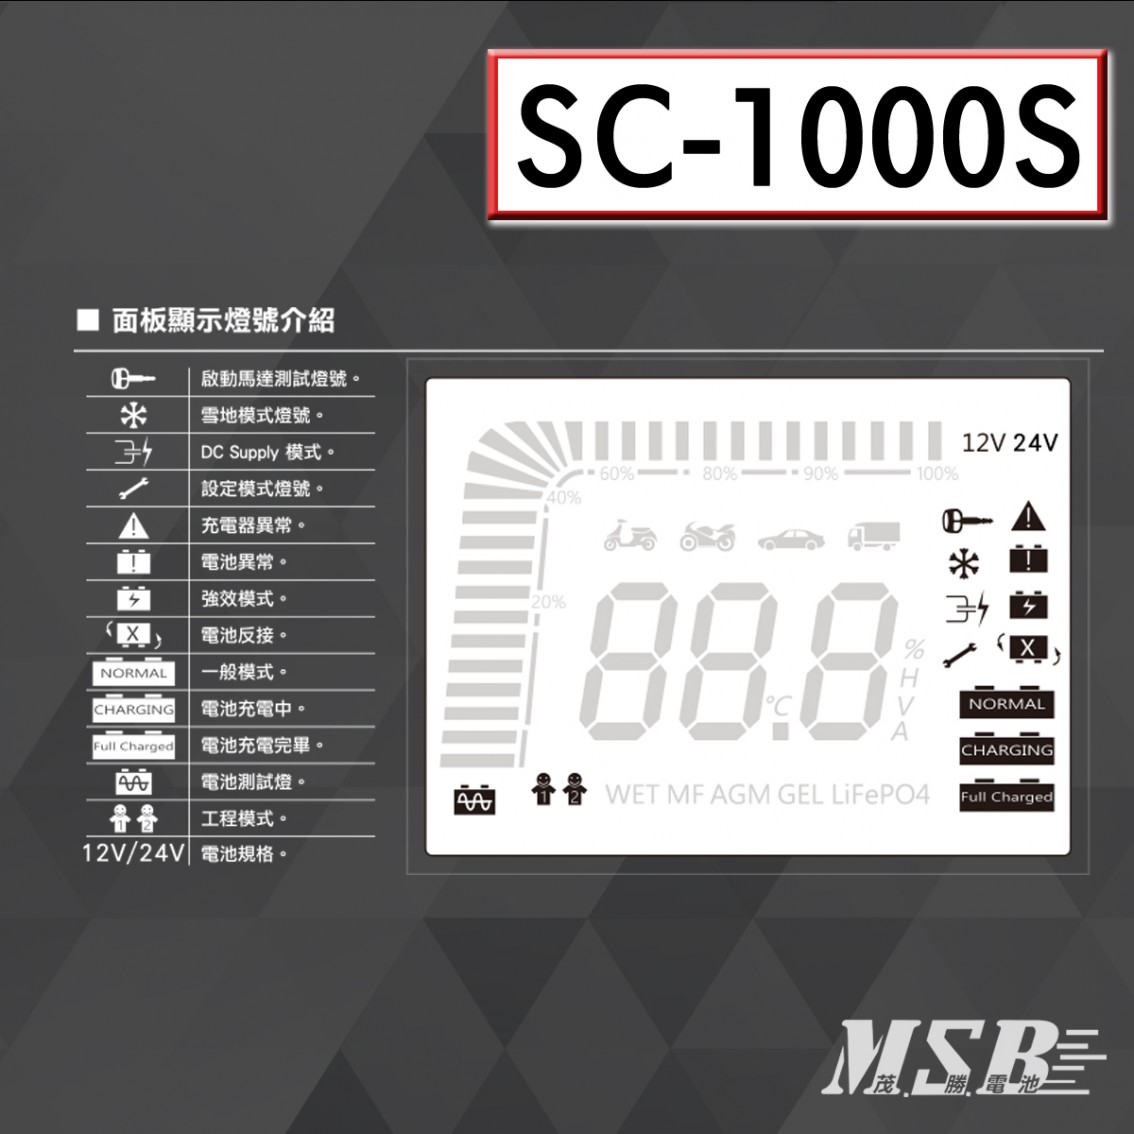 SC-1000S